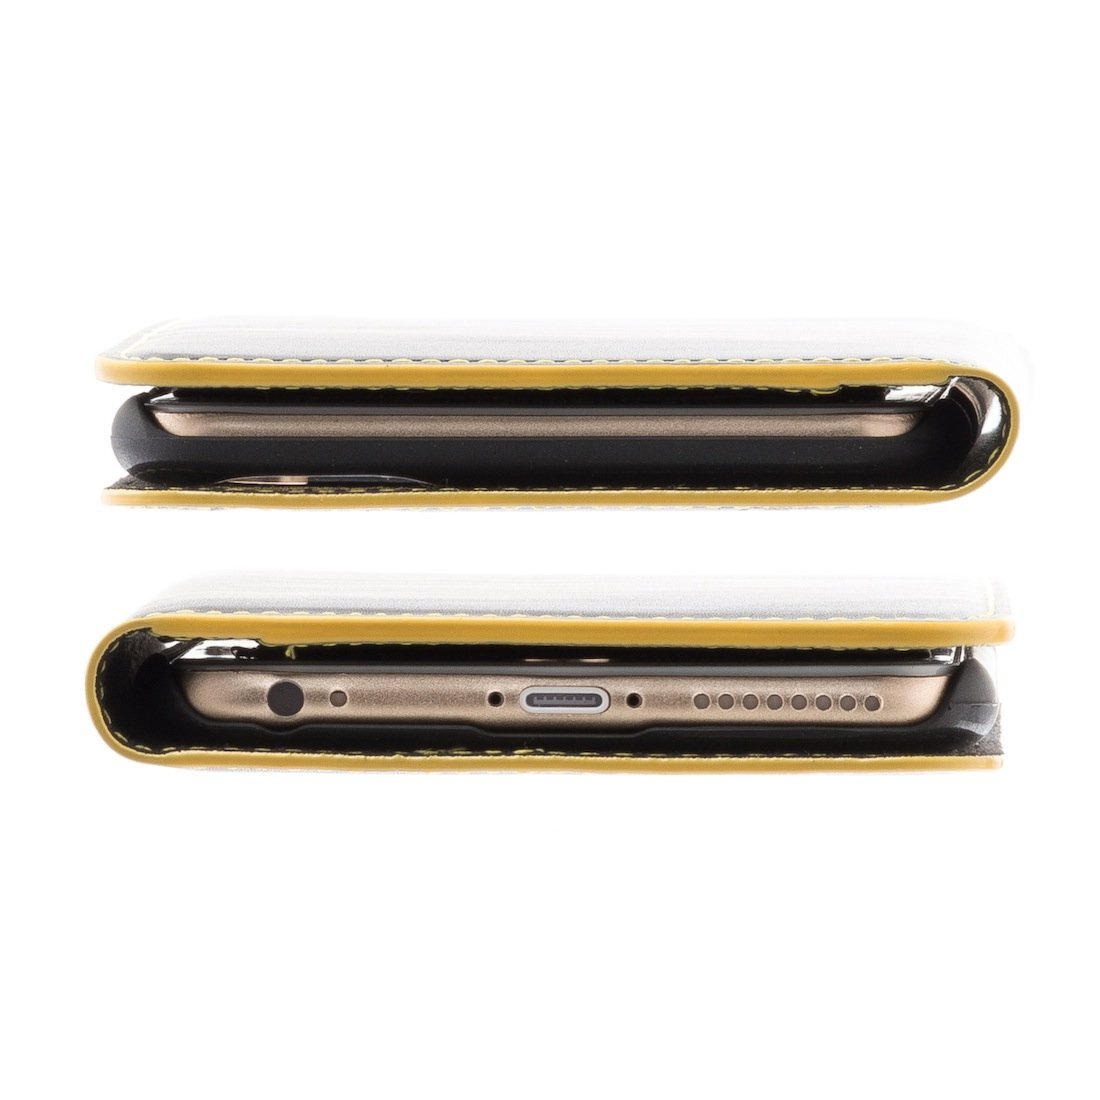 新品 訳あり iPhone6Plus iPhone6sPlus 高級 手帳型 イタリア産 本革 ケース ナイトトリップ ブラック×イエローステッチ modamania_画像5